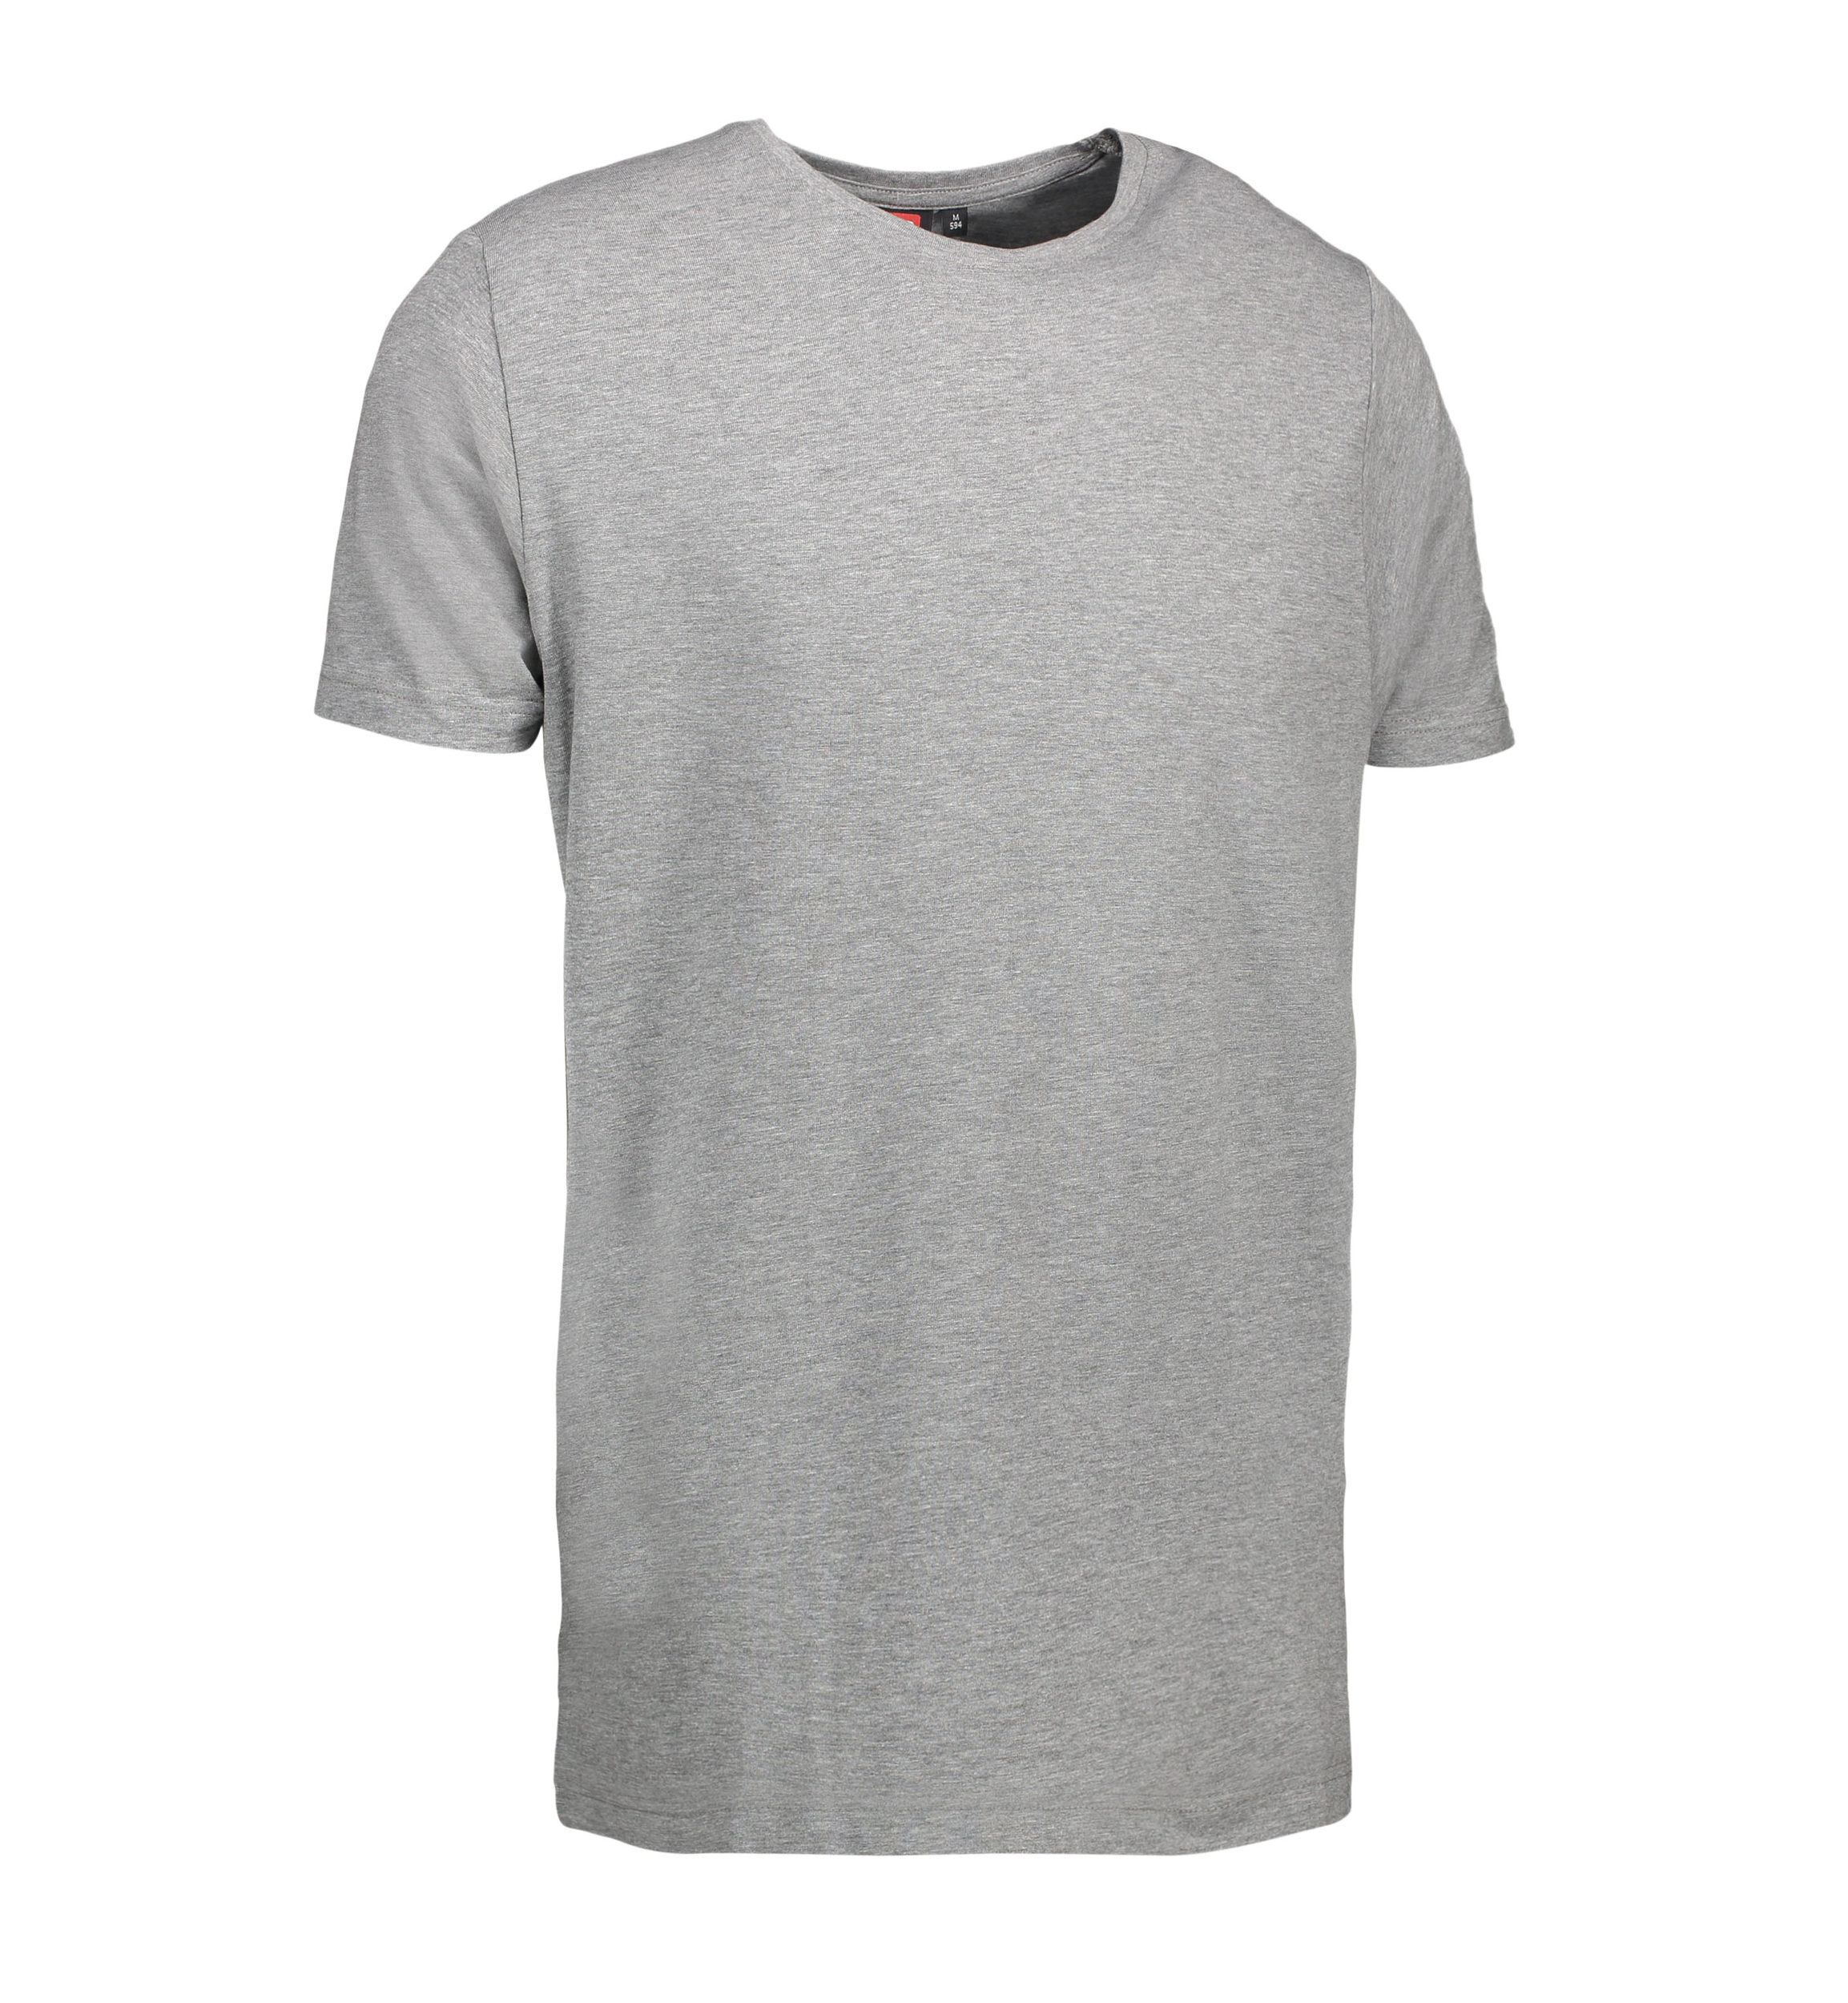 Billede af Stretch t-shirt til mænd i grå - 3XL hos Sygeplejebutikken.dk